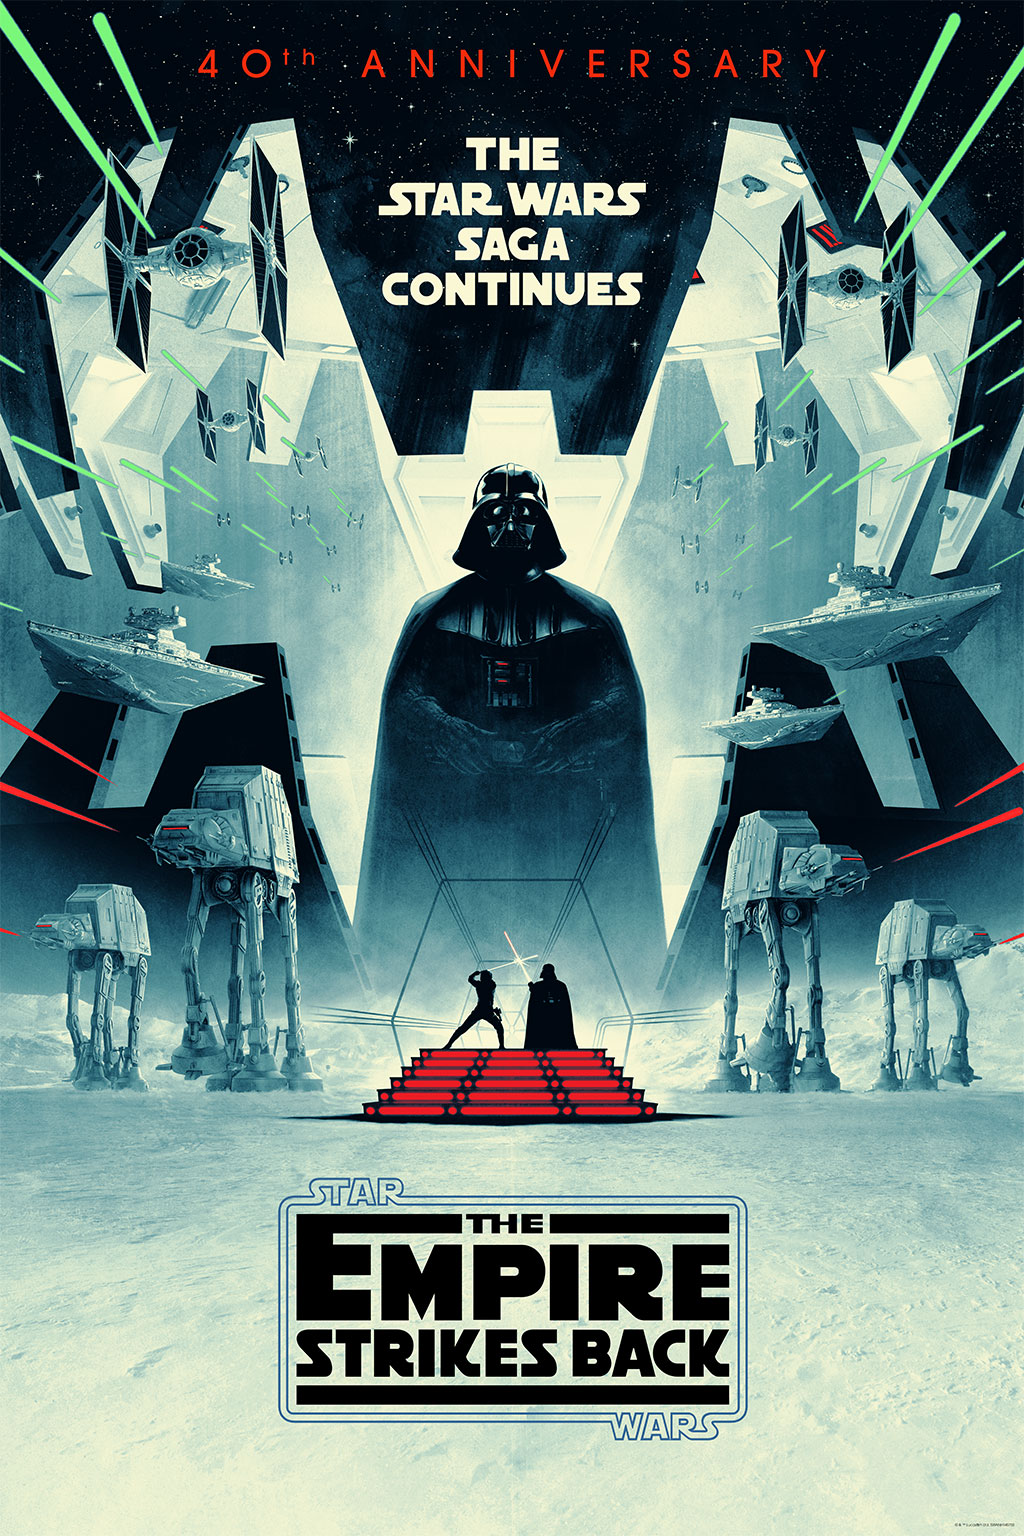 The Empire Strikes Back by Matt Ferguson (Image: Lucasfilm)